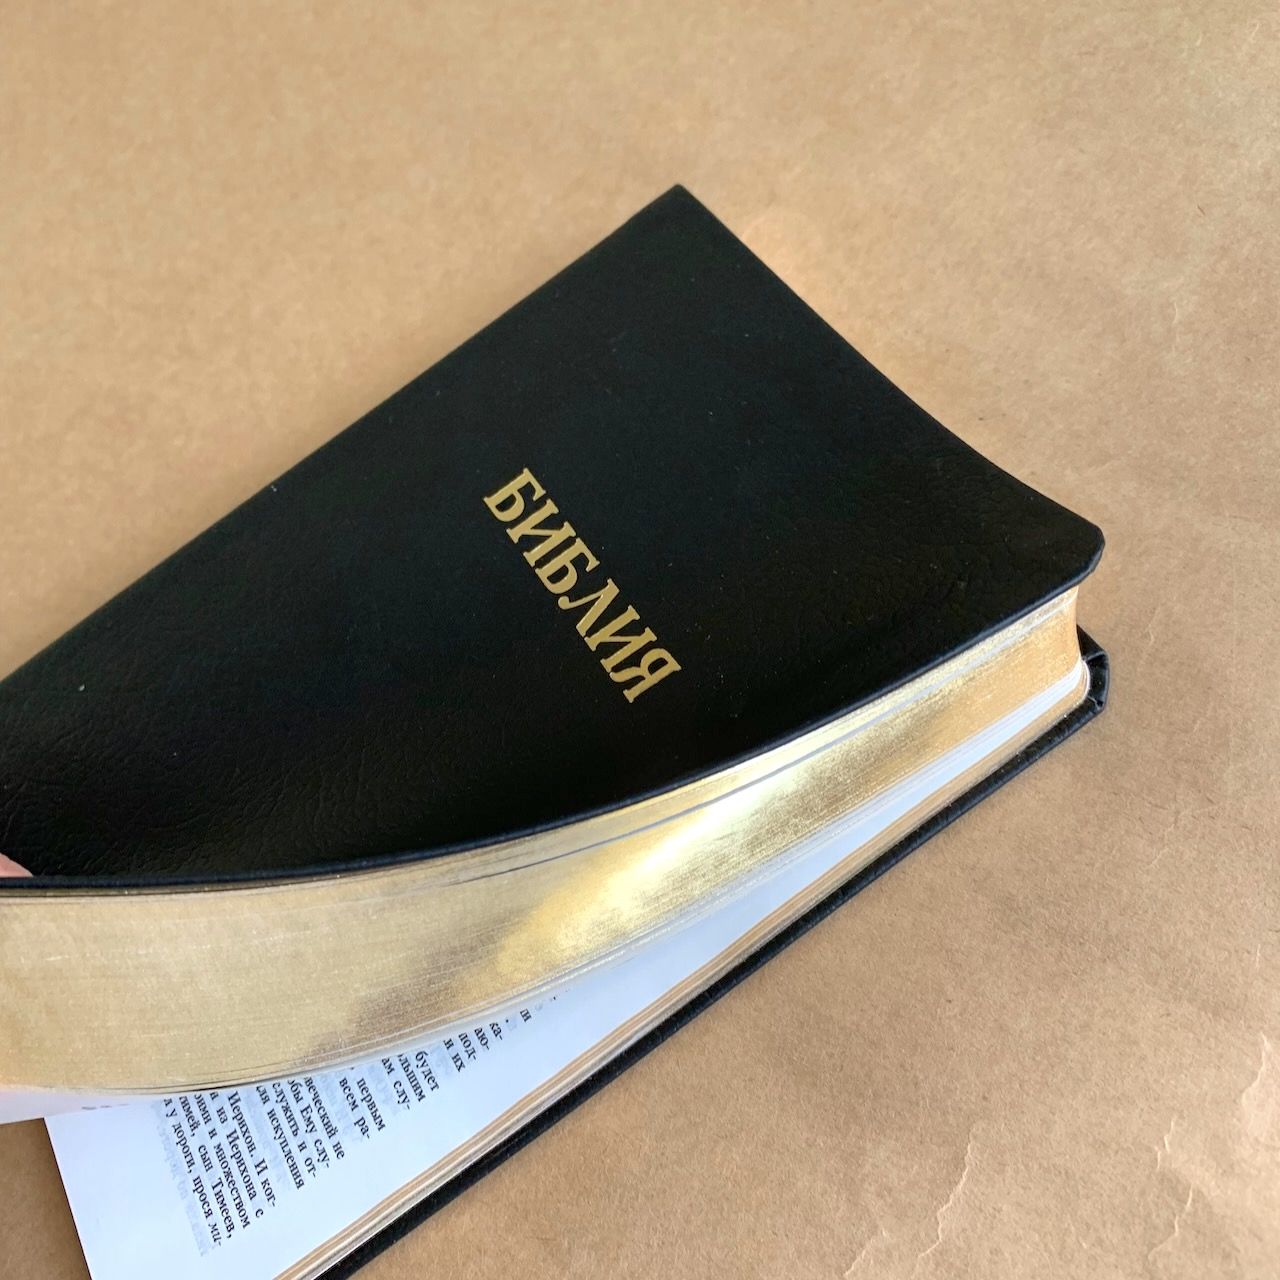 Библия 048 код D4 надпись "библия", кожаный переплет, цвет черный, формат 125*190 мм, золотой обрез, синодальный перевод, паралельные места по центру страницы, 2 закладки, шрифт 10-11 кегель, цветные карты